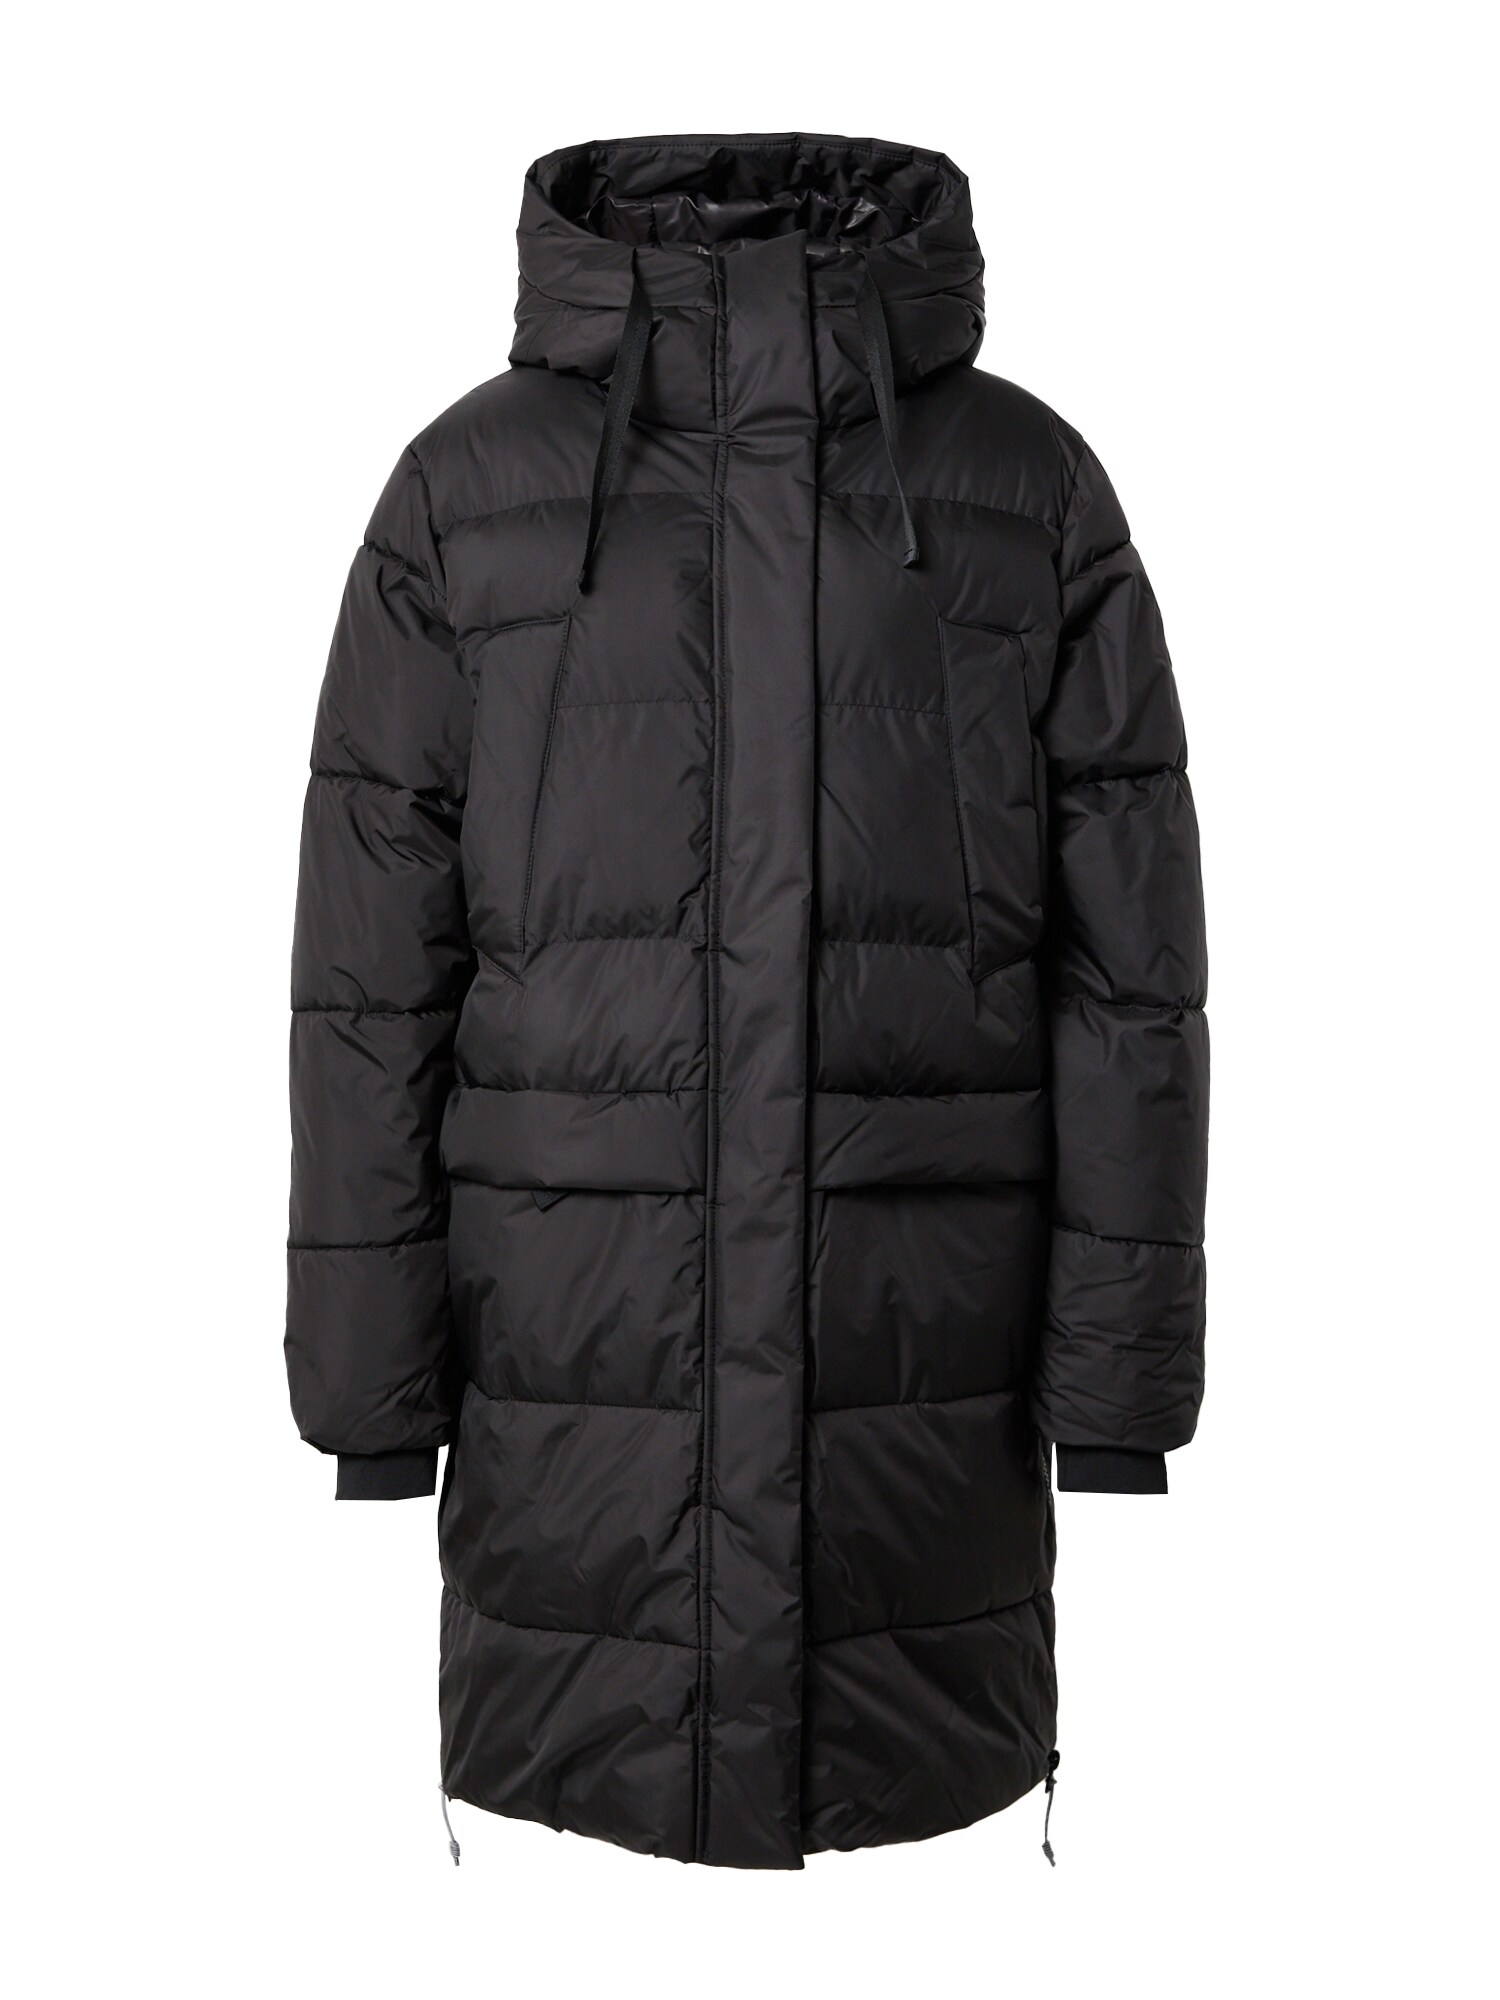 Outdoorový kabát ARTERN čierna biela ICEPEAK